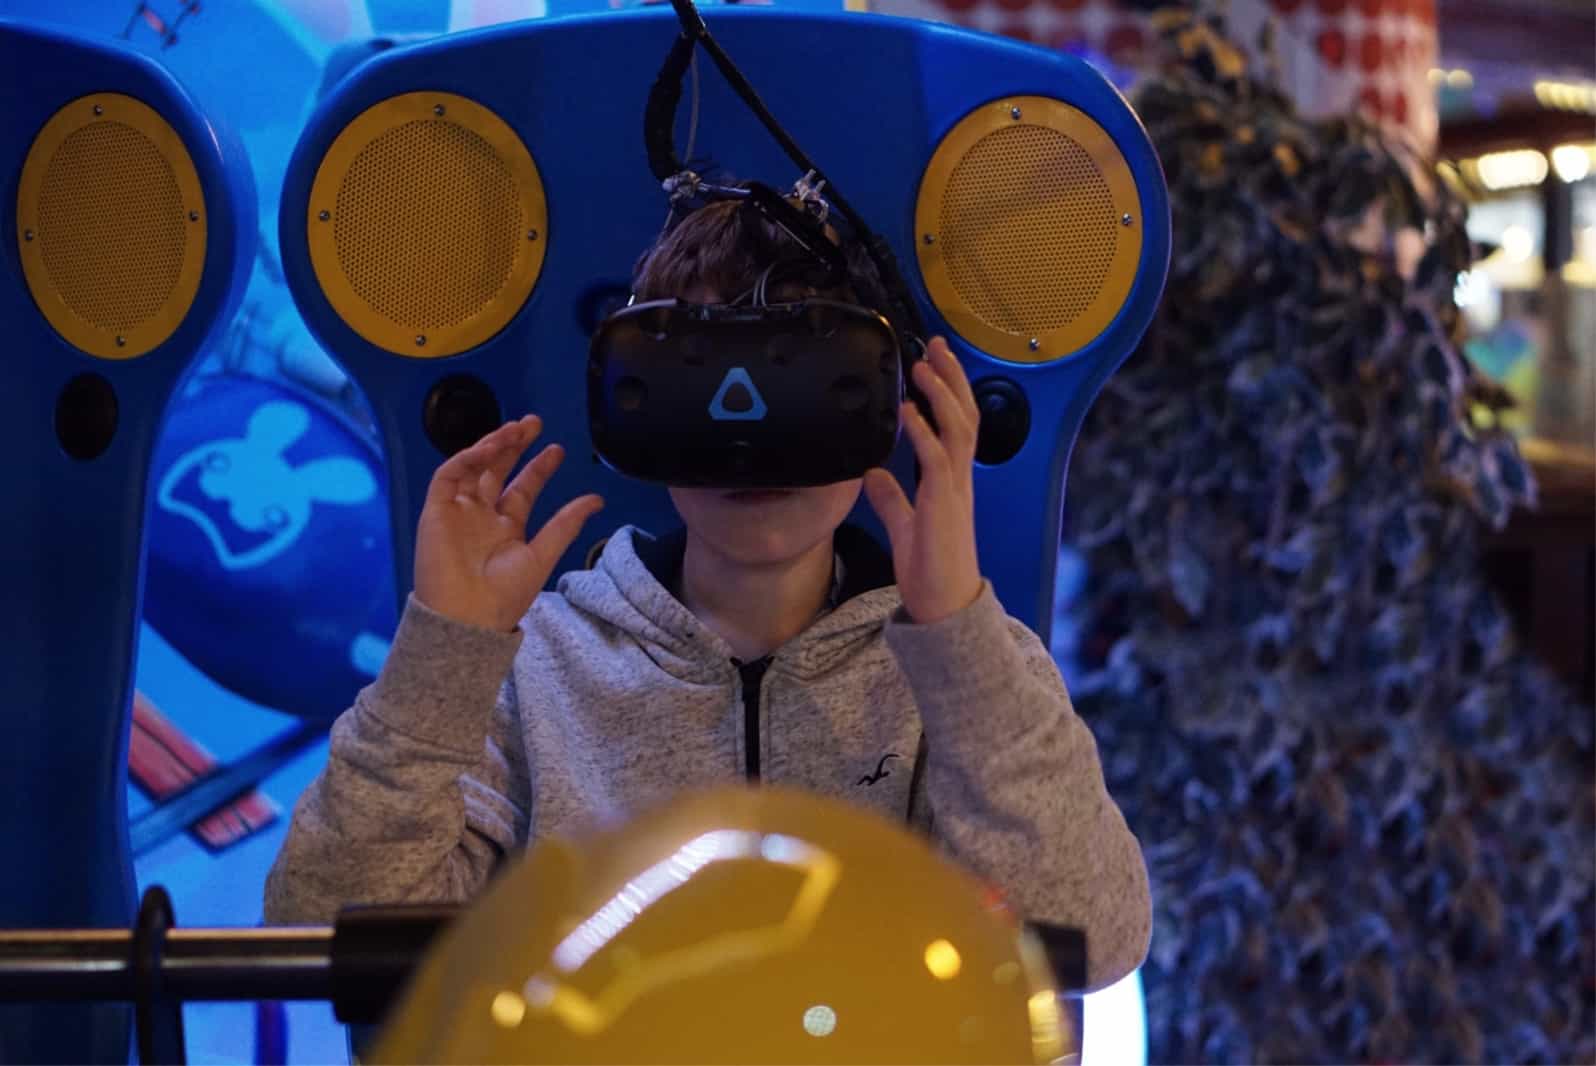 Virtual reality games at Coral Island